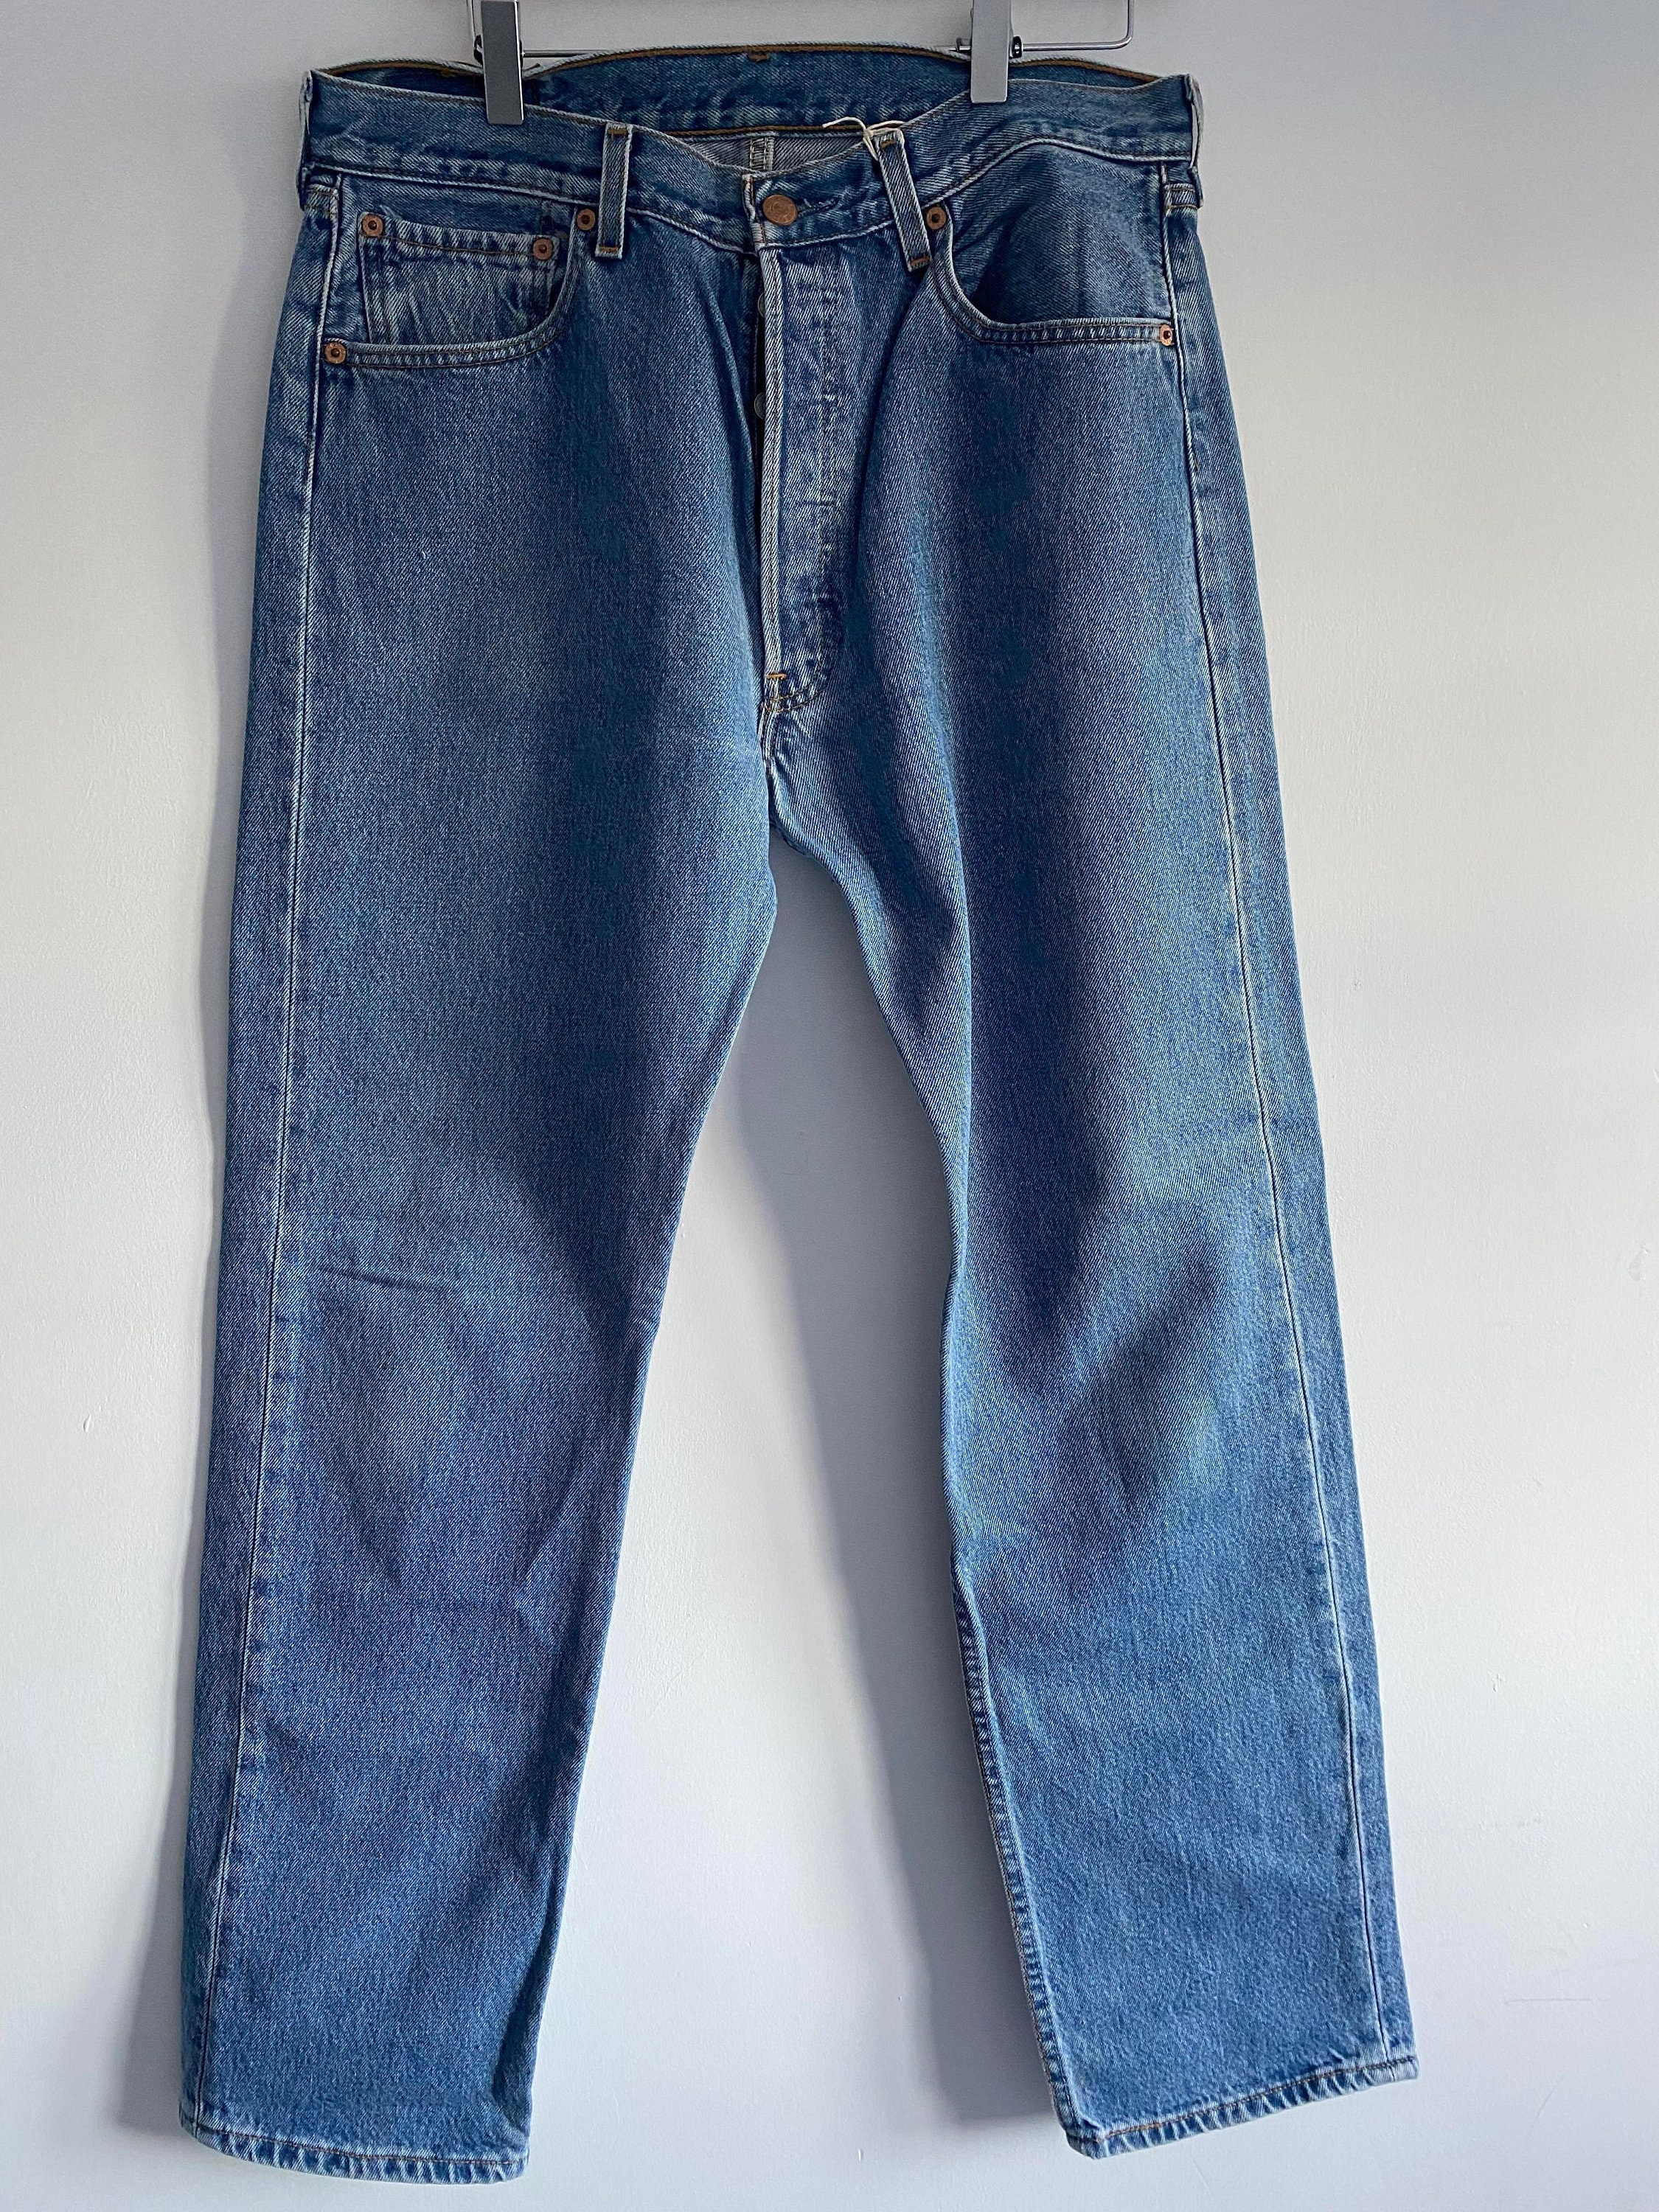 Vintage Chanel 99P, 1999 Spring Denim Blue Jeans Pants Trousers FR 38